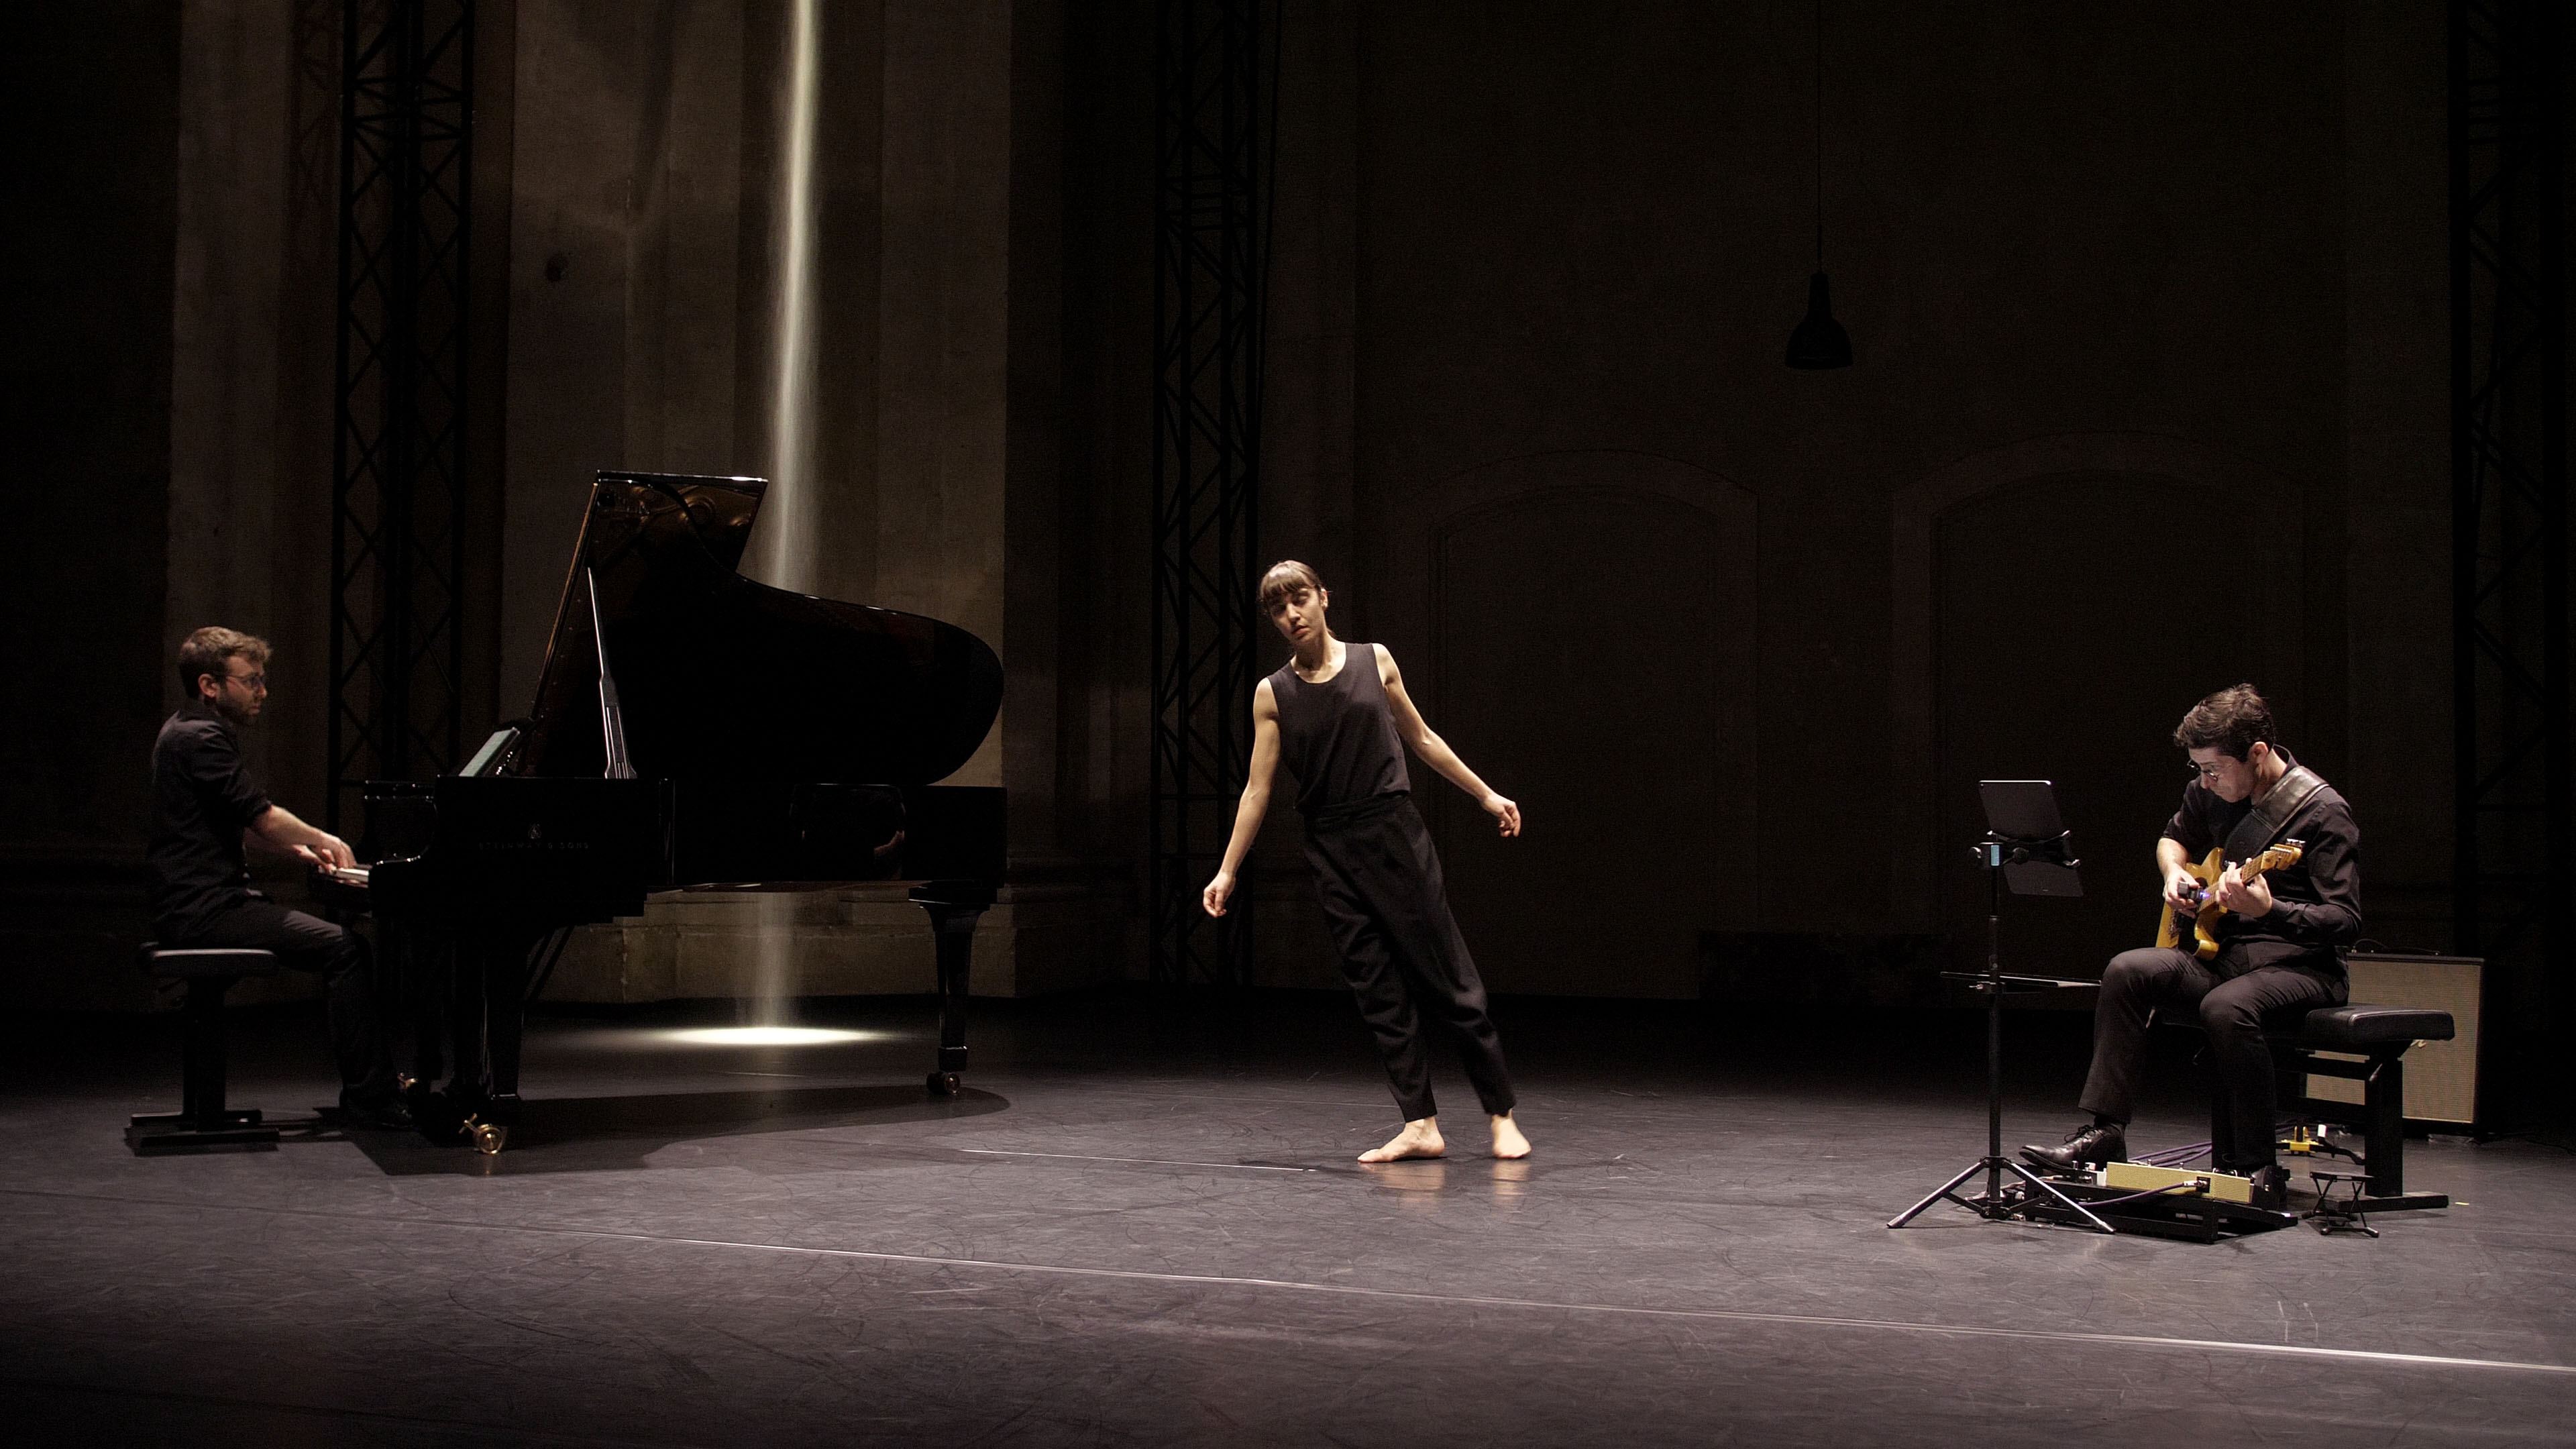 Sur scène à gauche un pianiste devant un piano à queue, au centre une danseuse dont le corps tangue vers le piano, à droite un musicien assis qui joue de la guitare